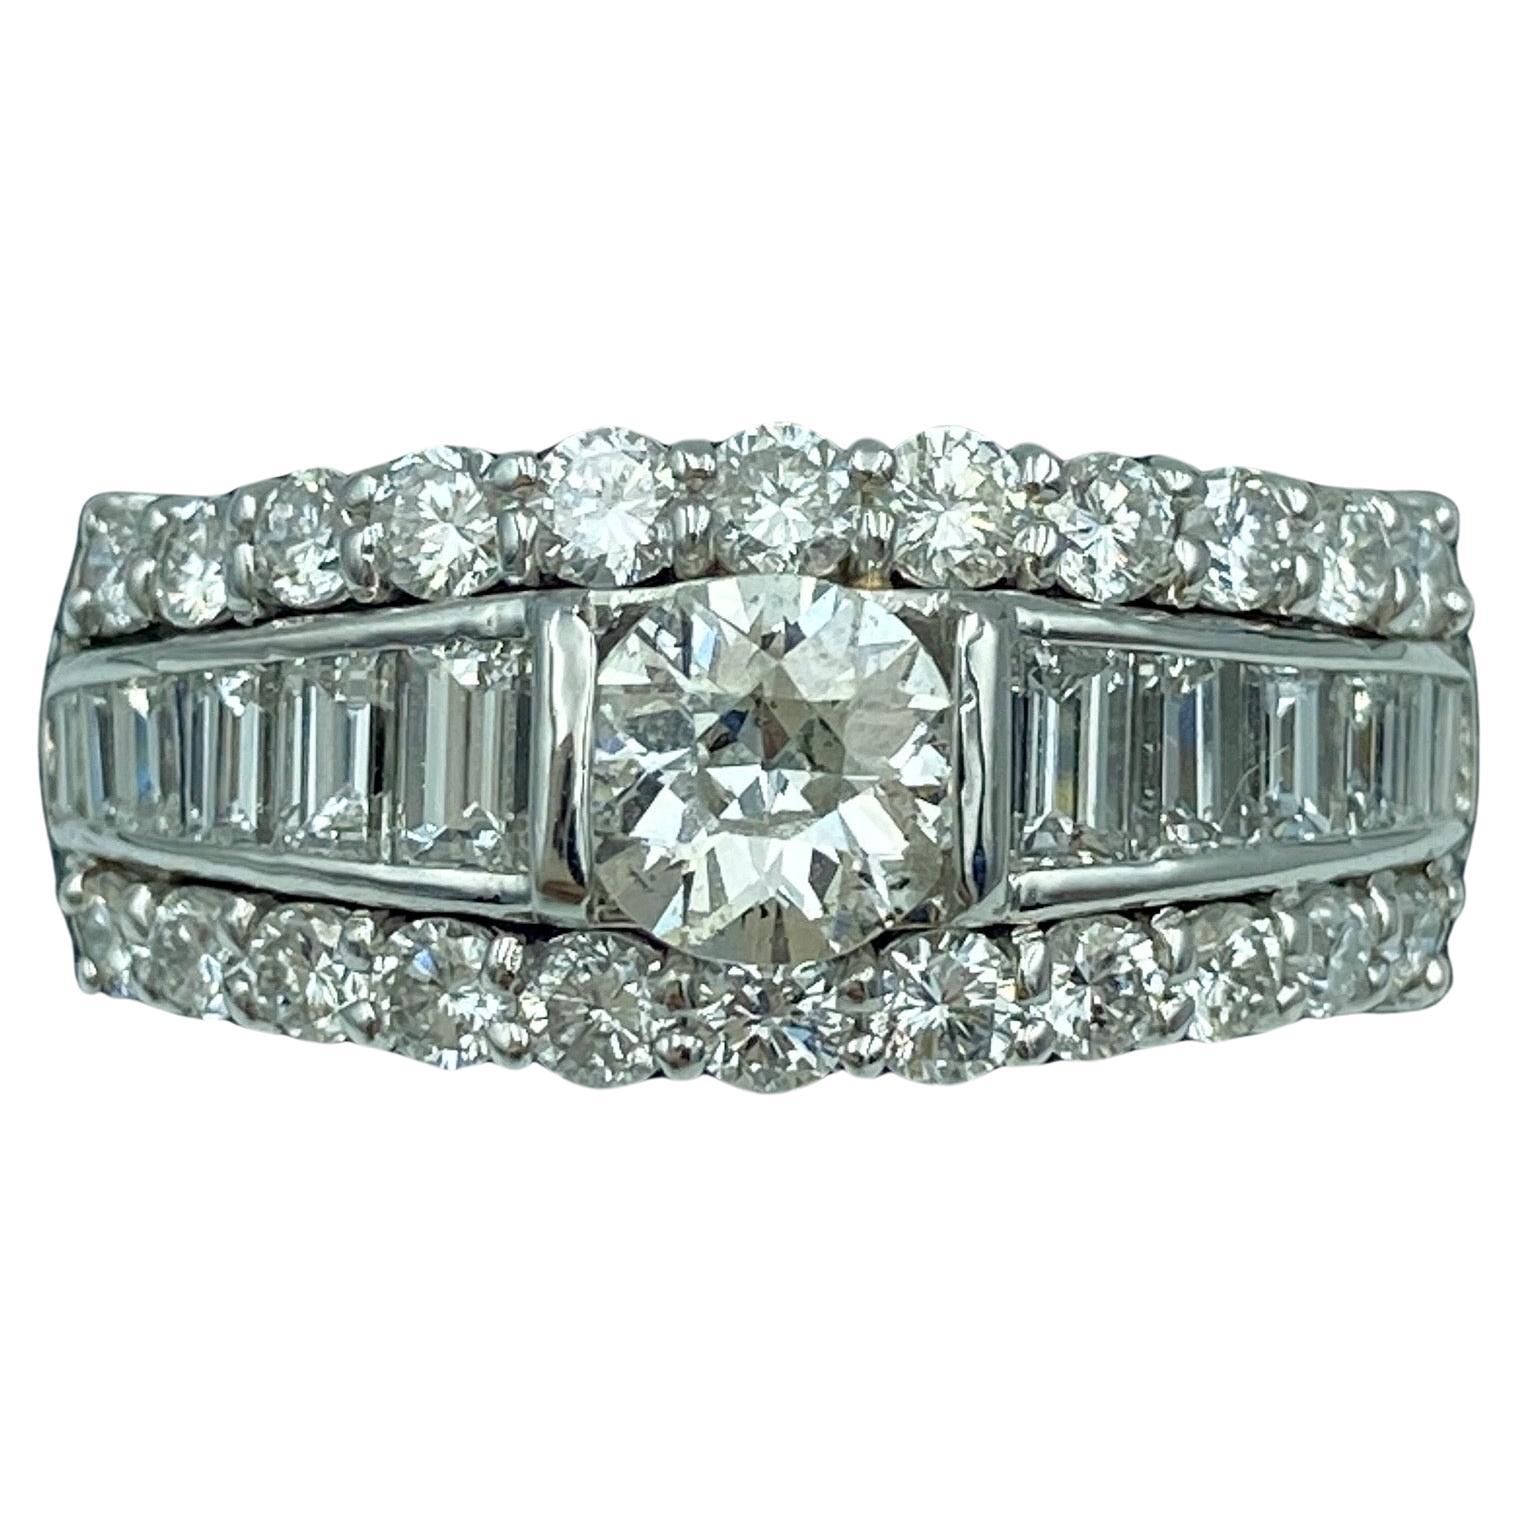 European 1970s diamond and platinum engagement ring